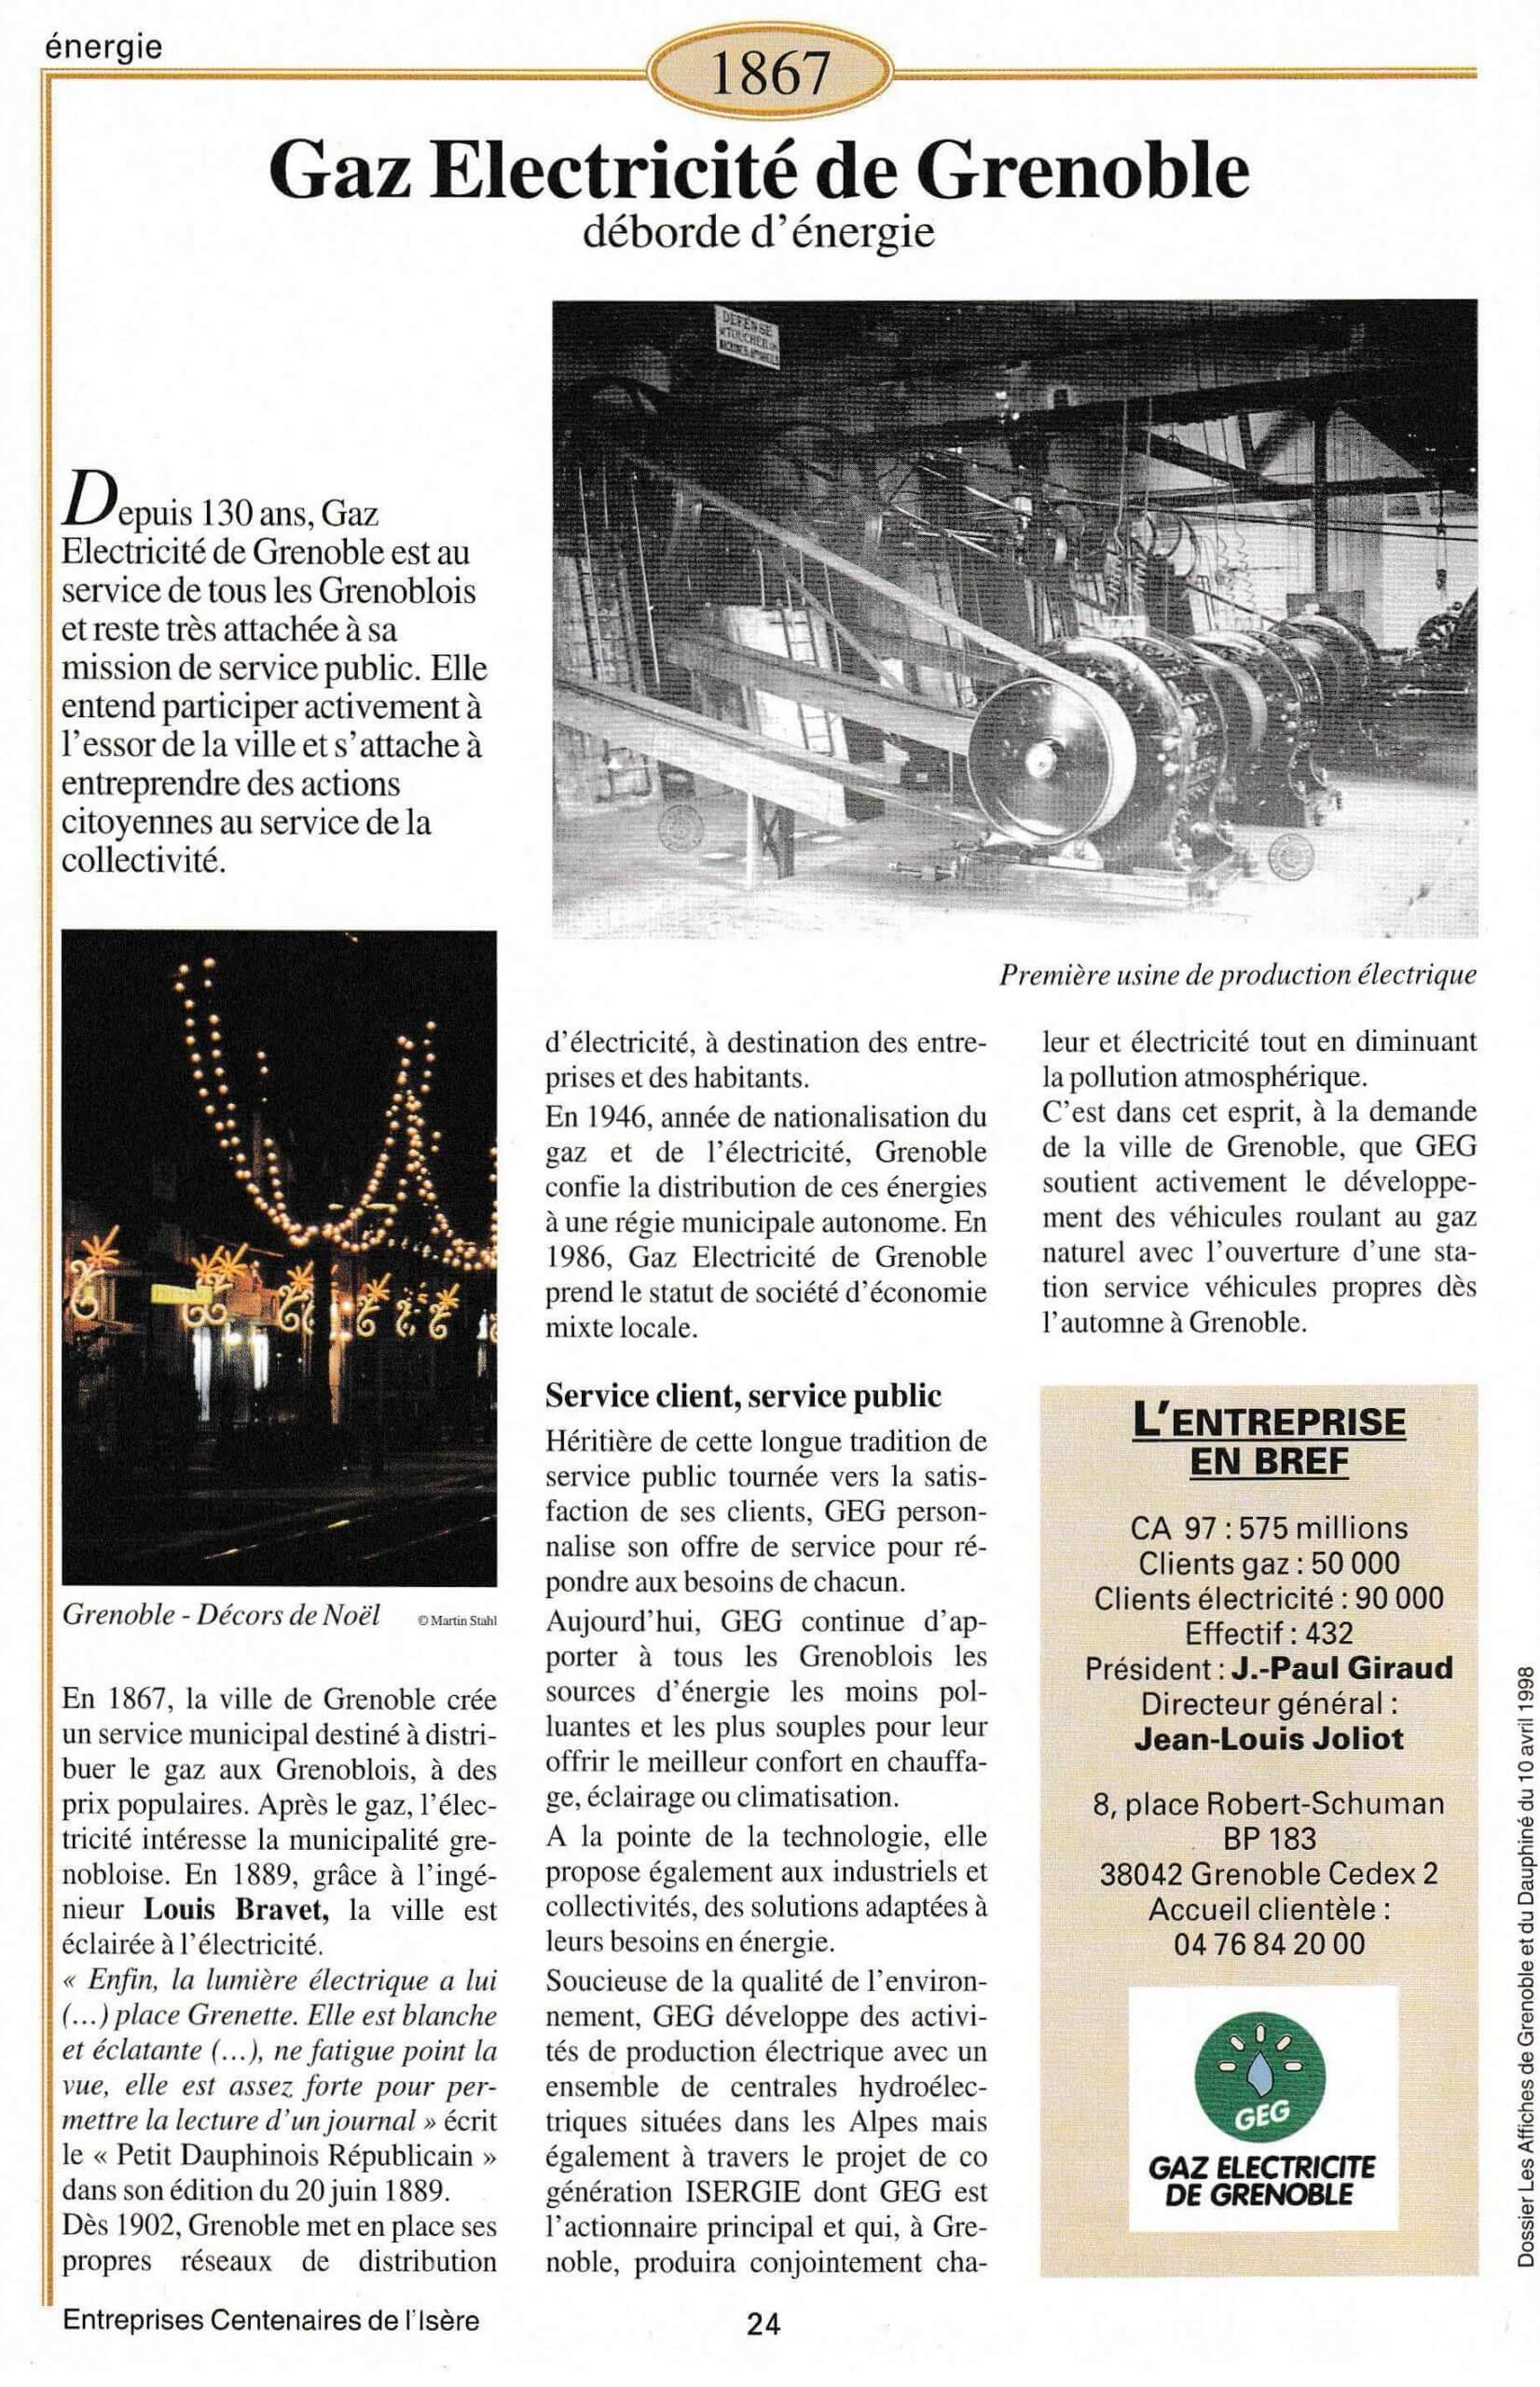 Gaz Electricité de Grenoble - fiche du supplément "Entreprises centenaires en Isère", publié par Les affiches de Grenoble et du Dauphiné, juin 1998.